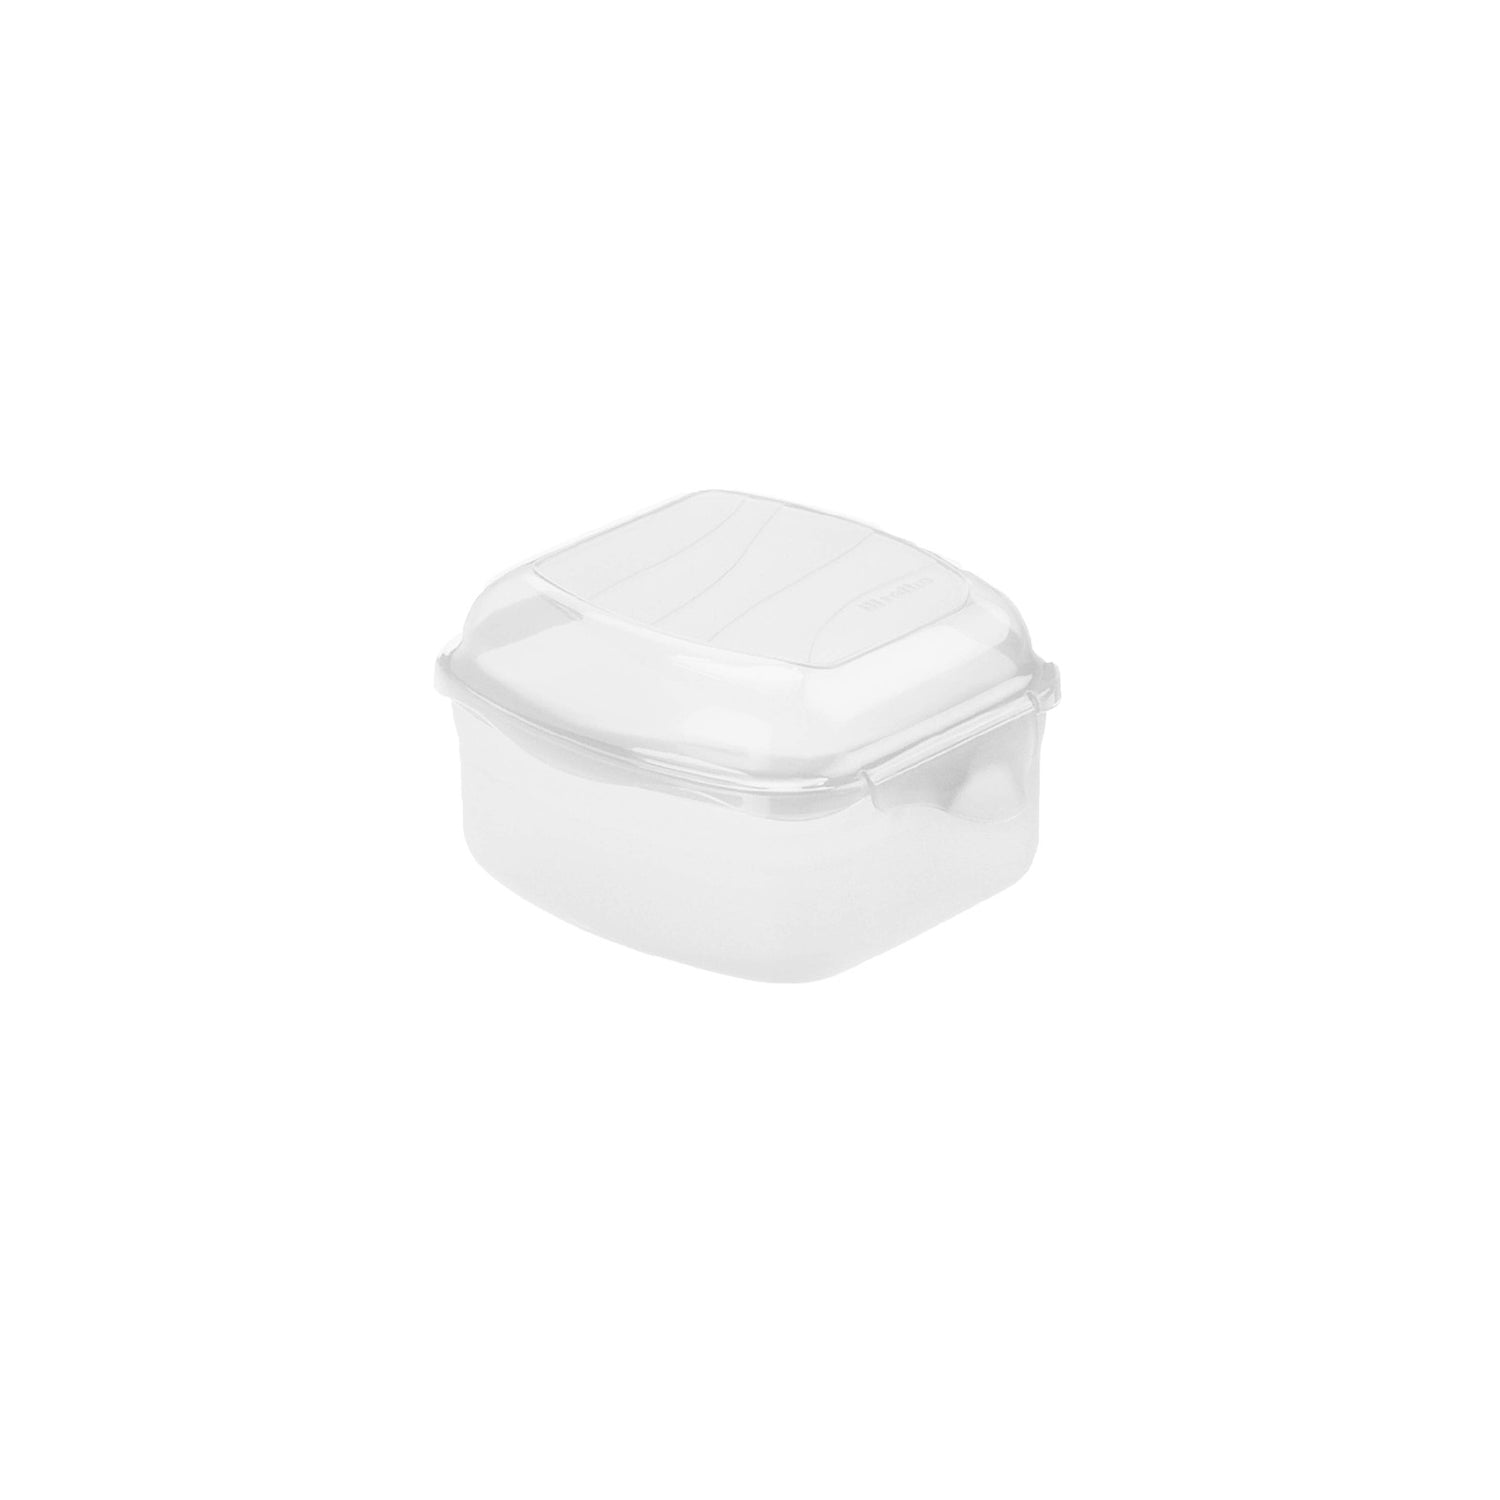 Lunch Box with Clip Closure 0.45L l FUN